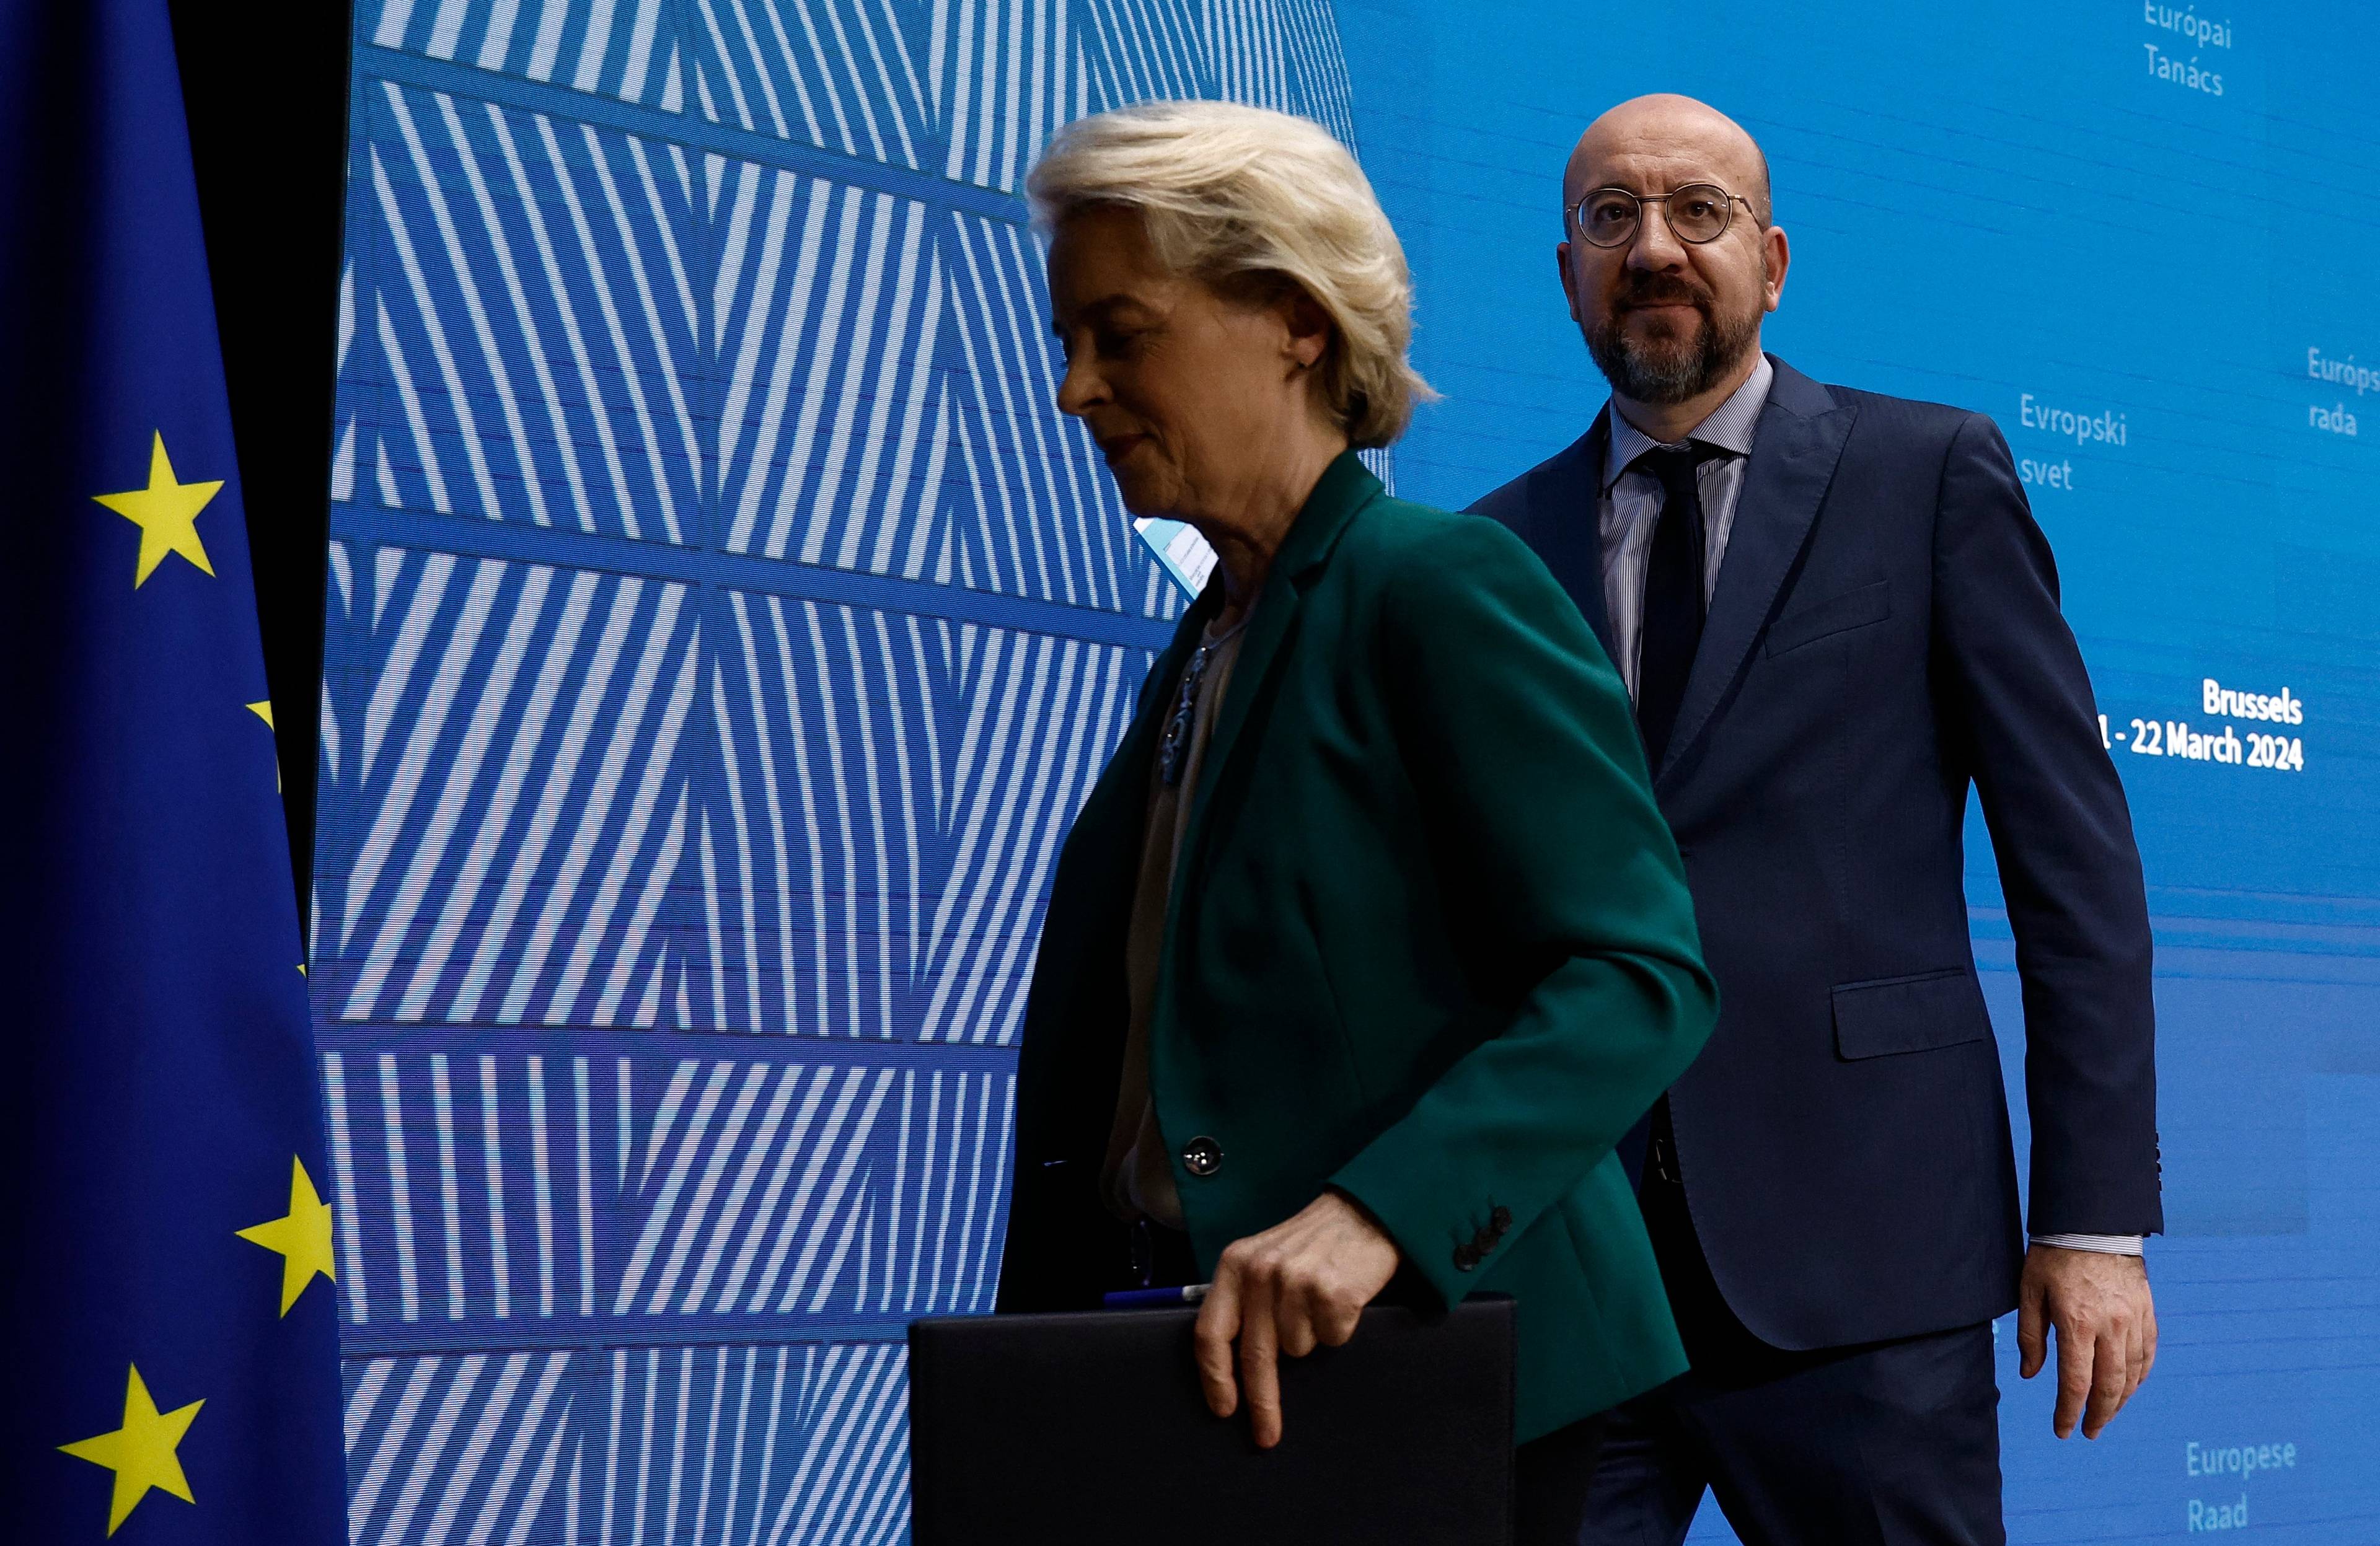 Kobieta w zielonej garsonce i mężczyzna w garniturze przechodzą obok niebieskiej ścianki i flagi Unii Europejskiej